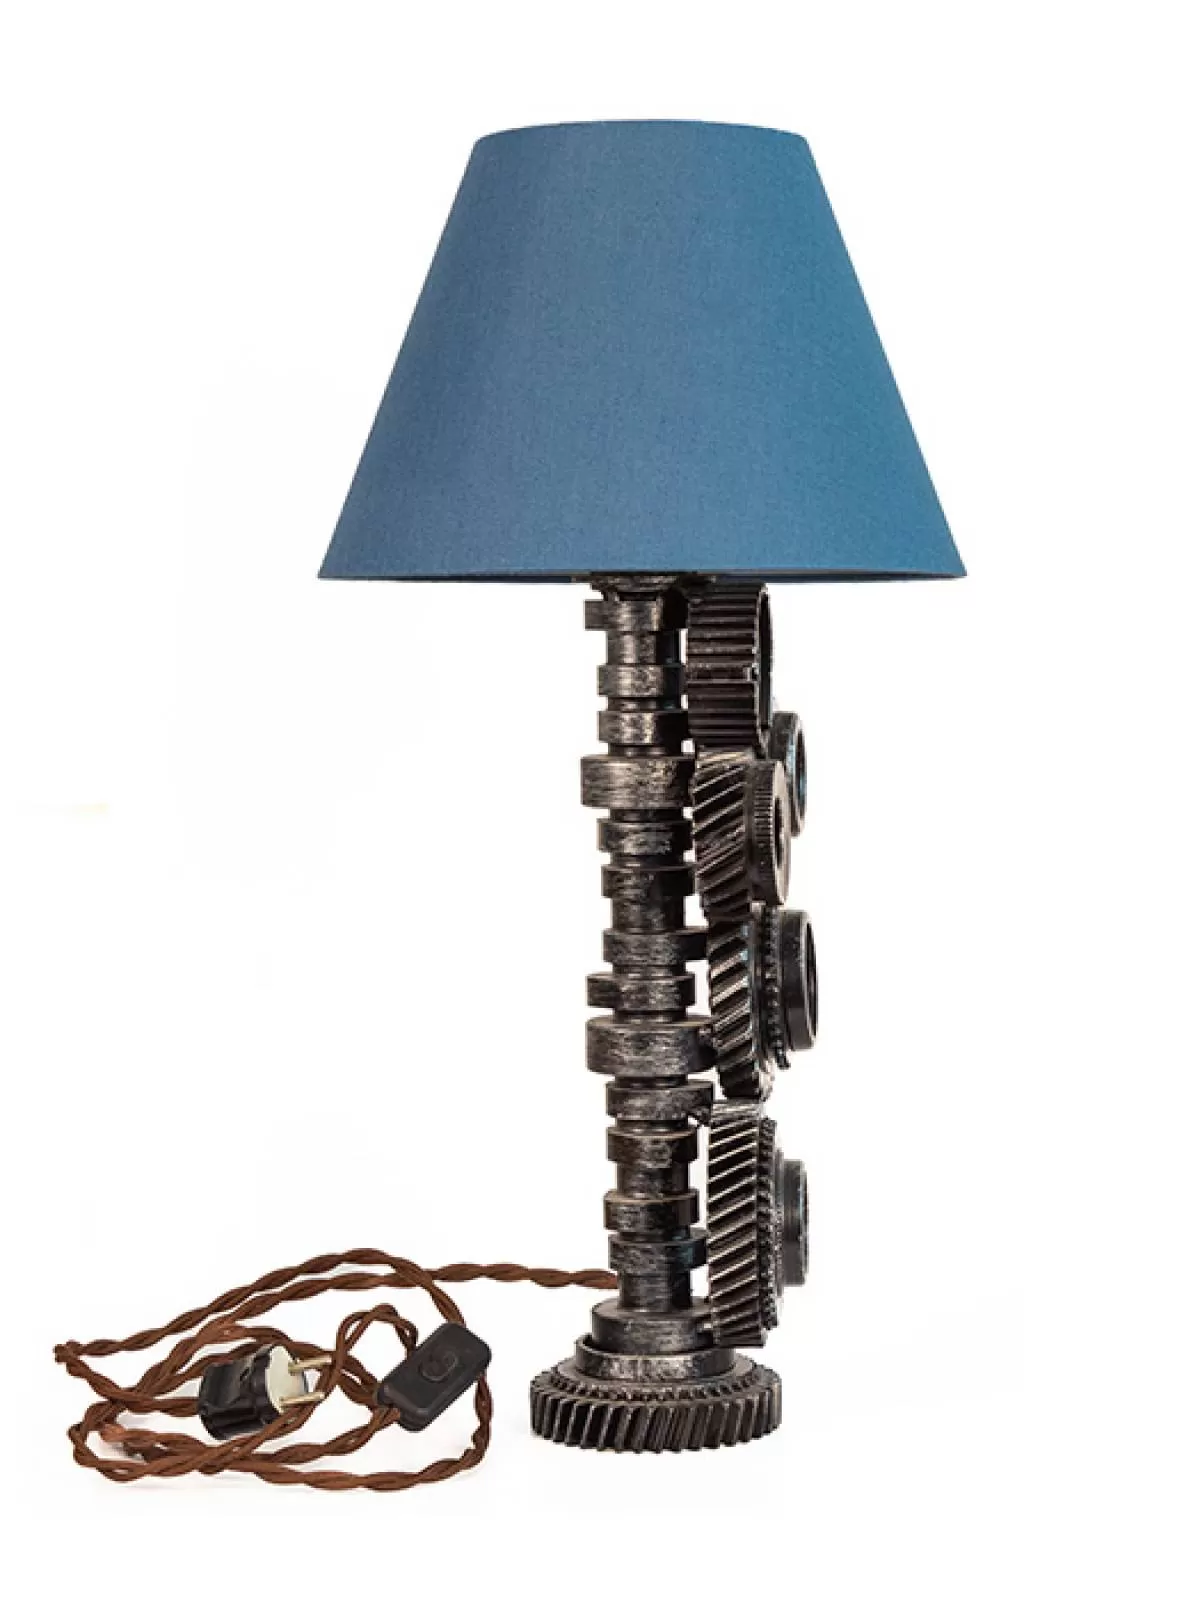 Светильник «Шестерни» с синим абажуром. Фотография 2